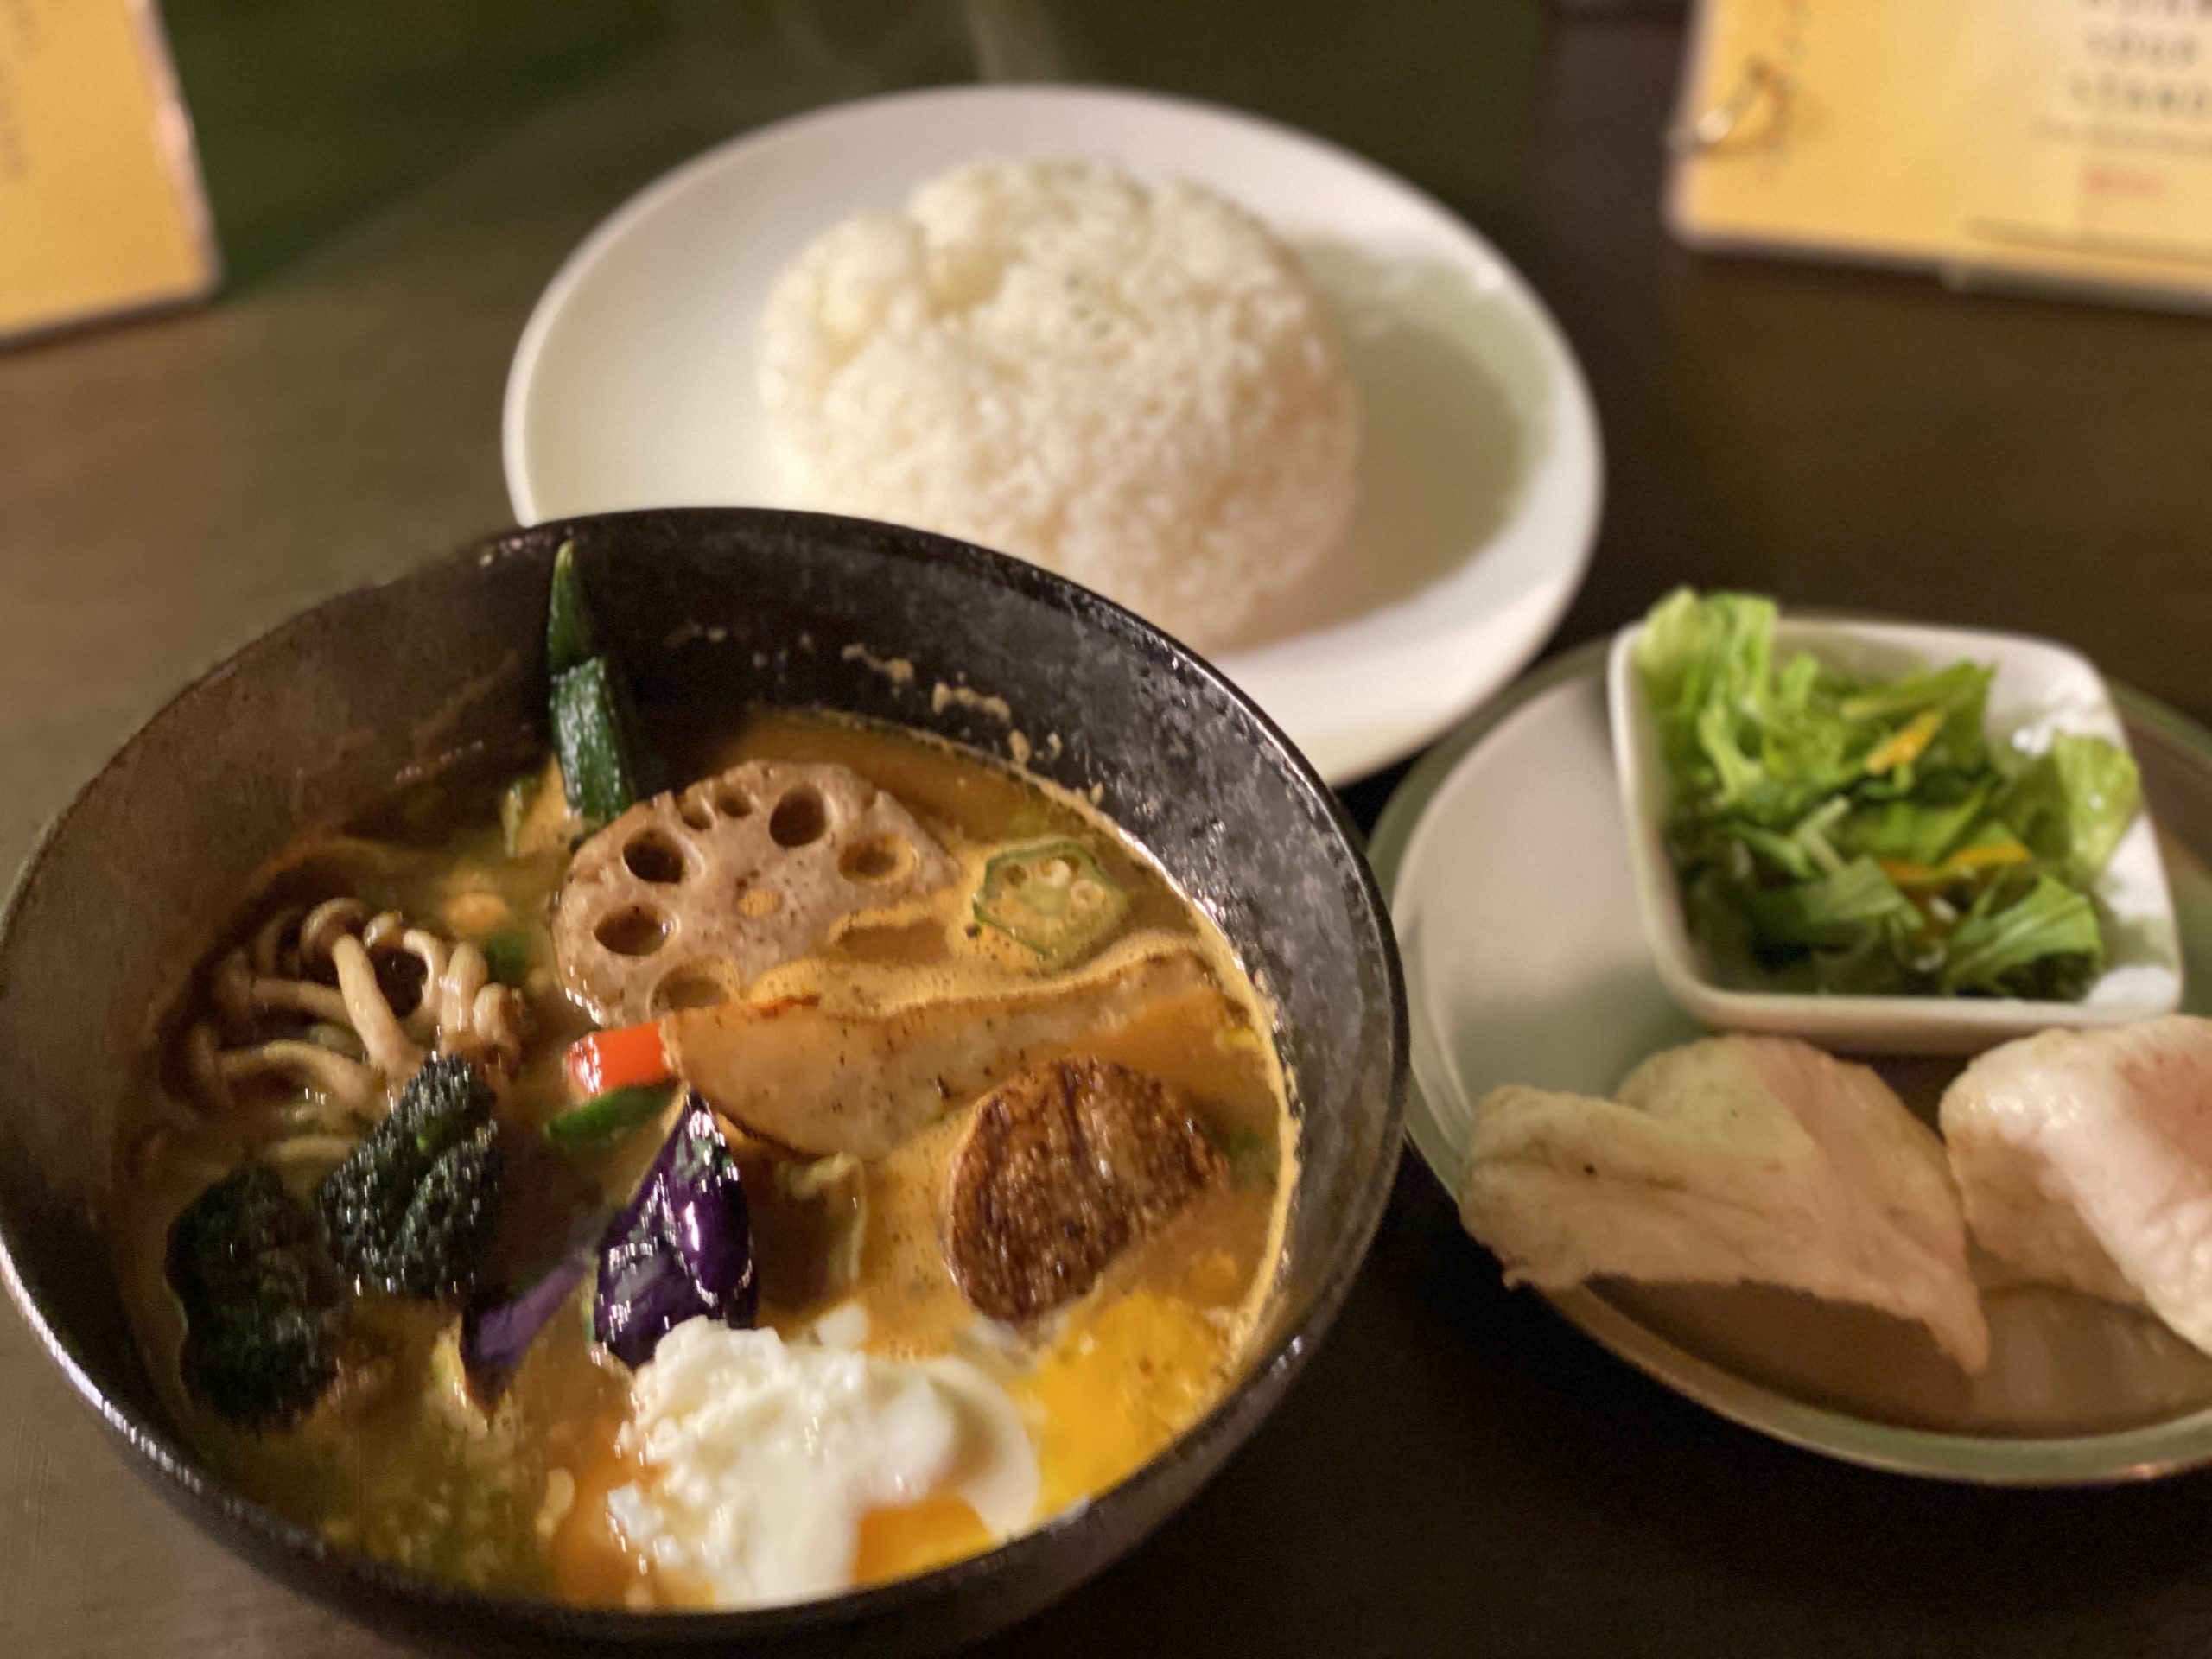 タイの唐辛子を使用した激辛スープカレーを食べたら全身の毛穴から汗が止まらない。